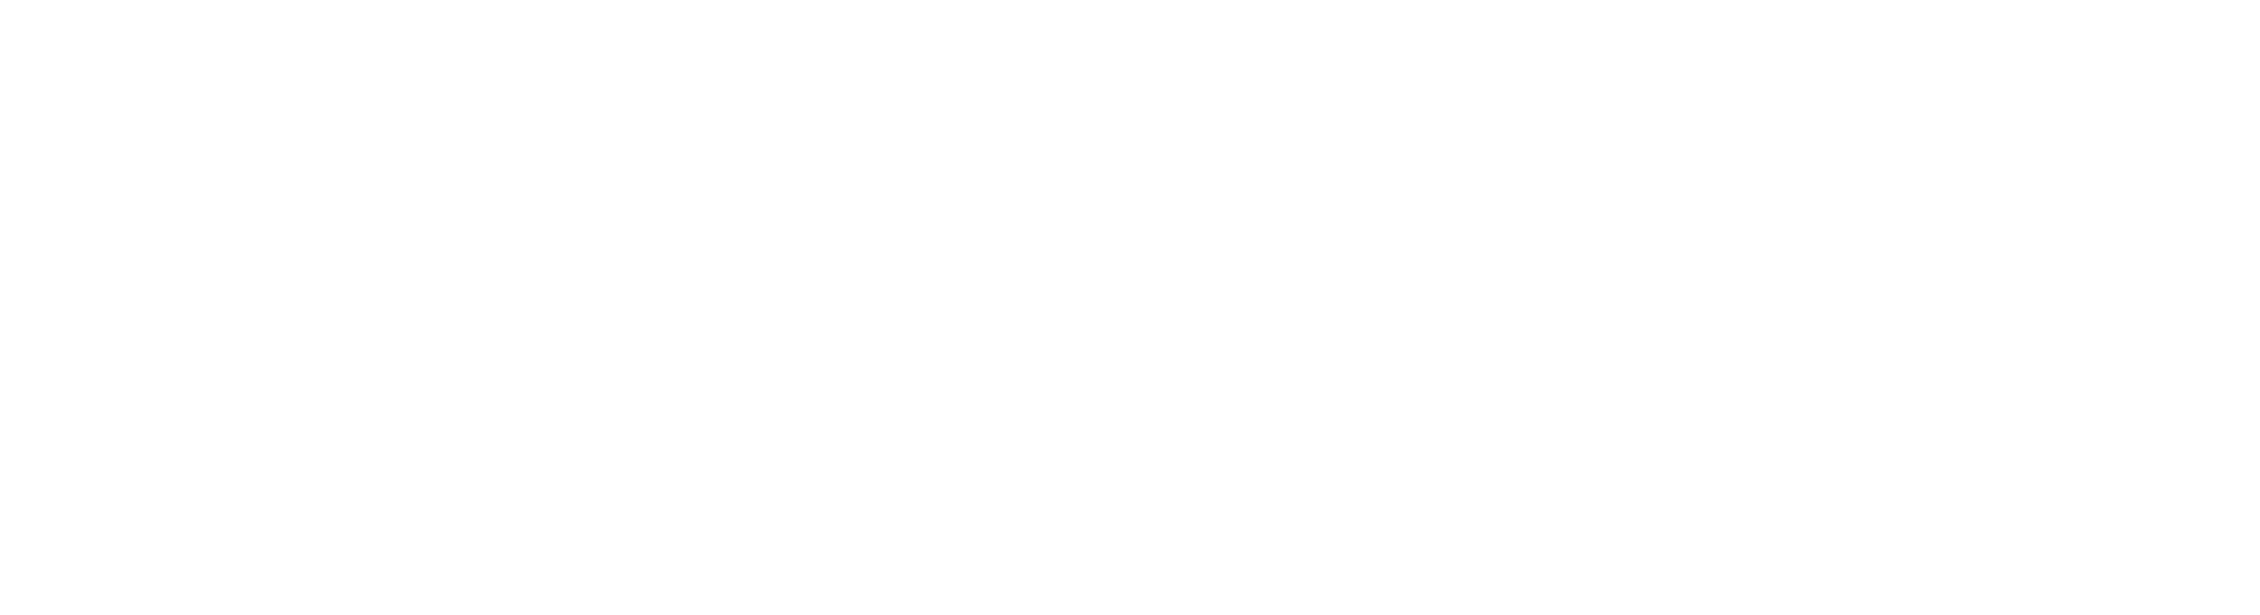 Miami University Libraries